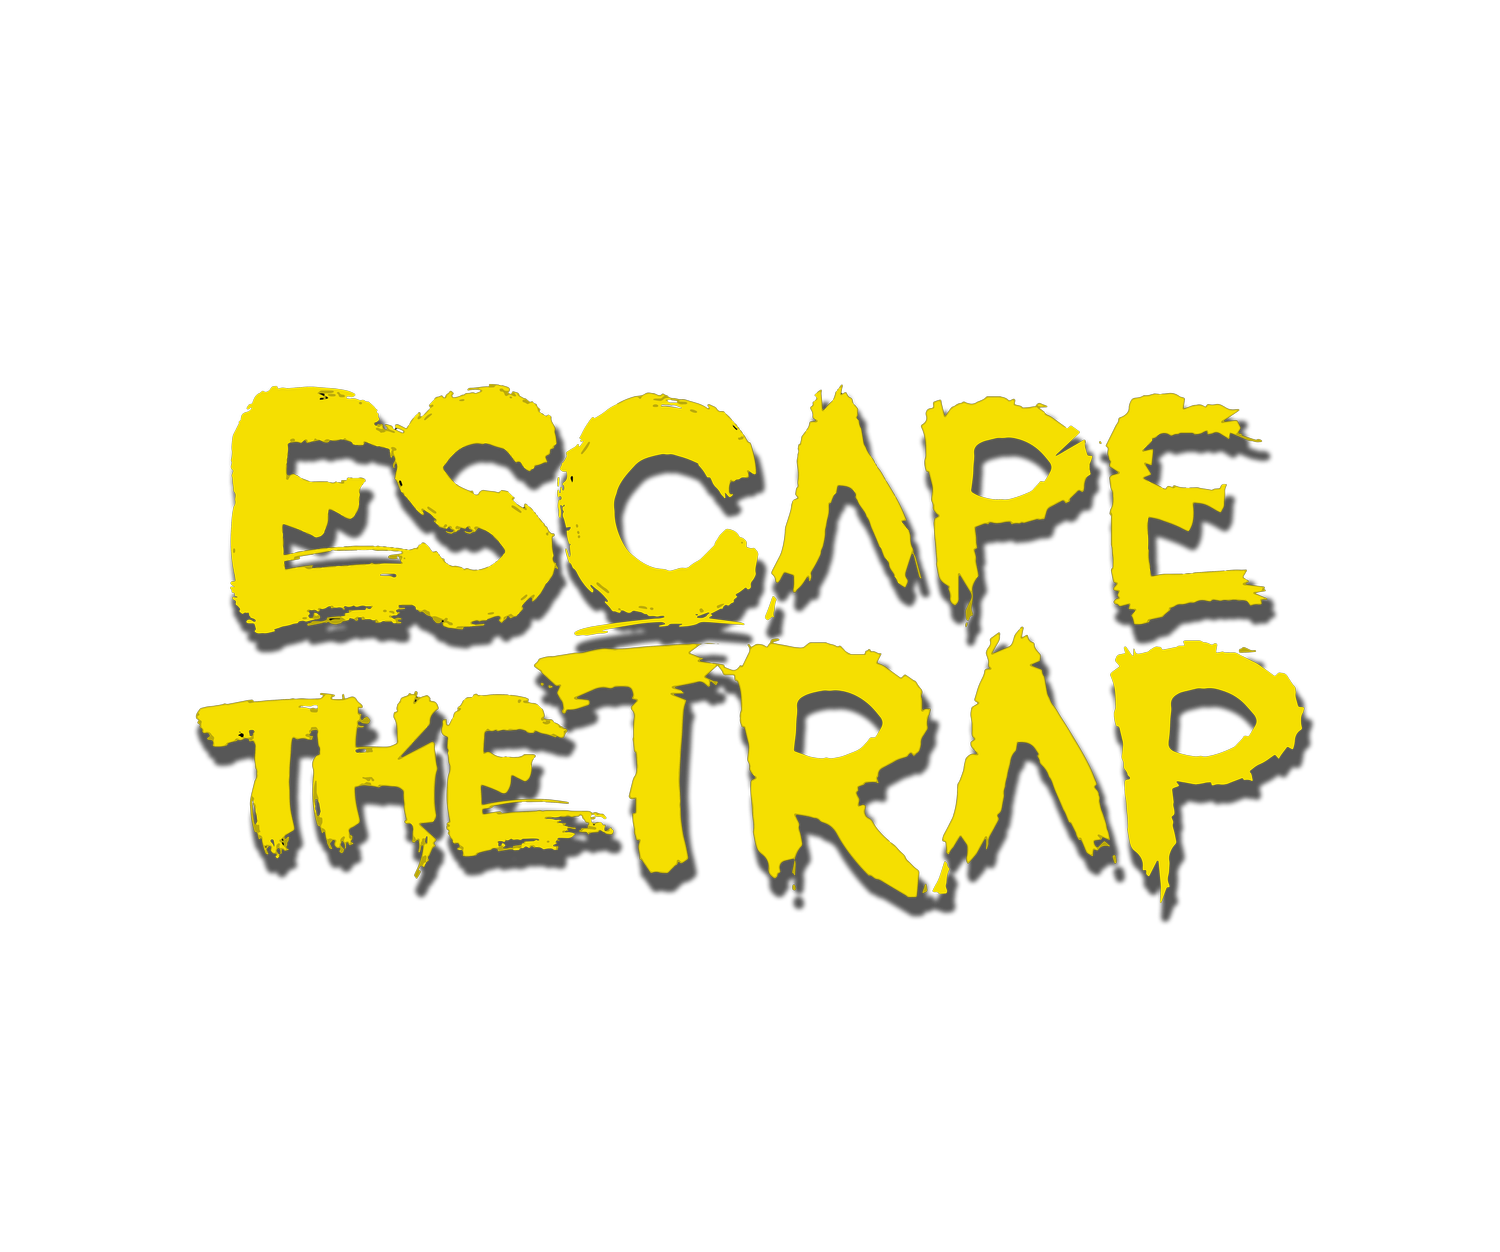 Escape The Trap